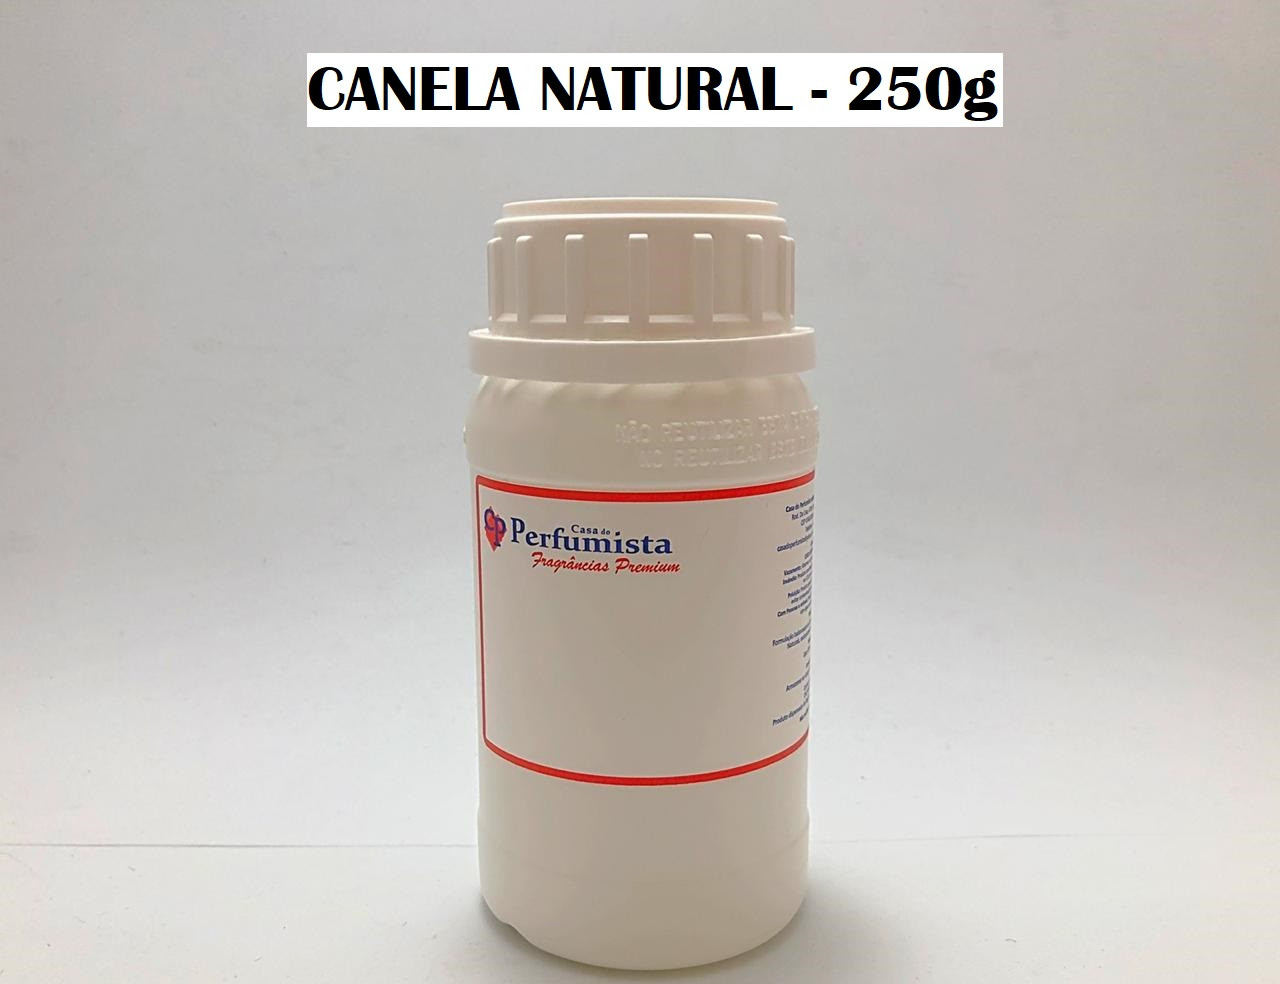 CANELA NATURAL - 250g